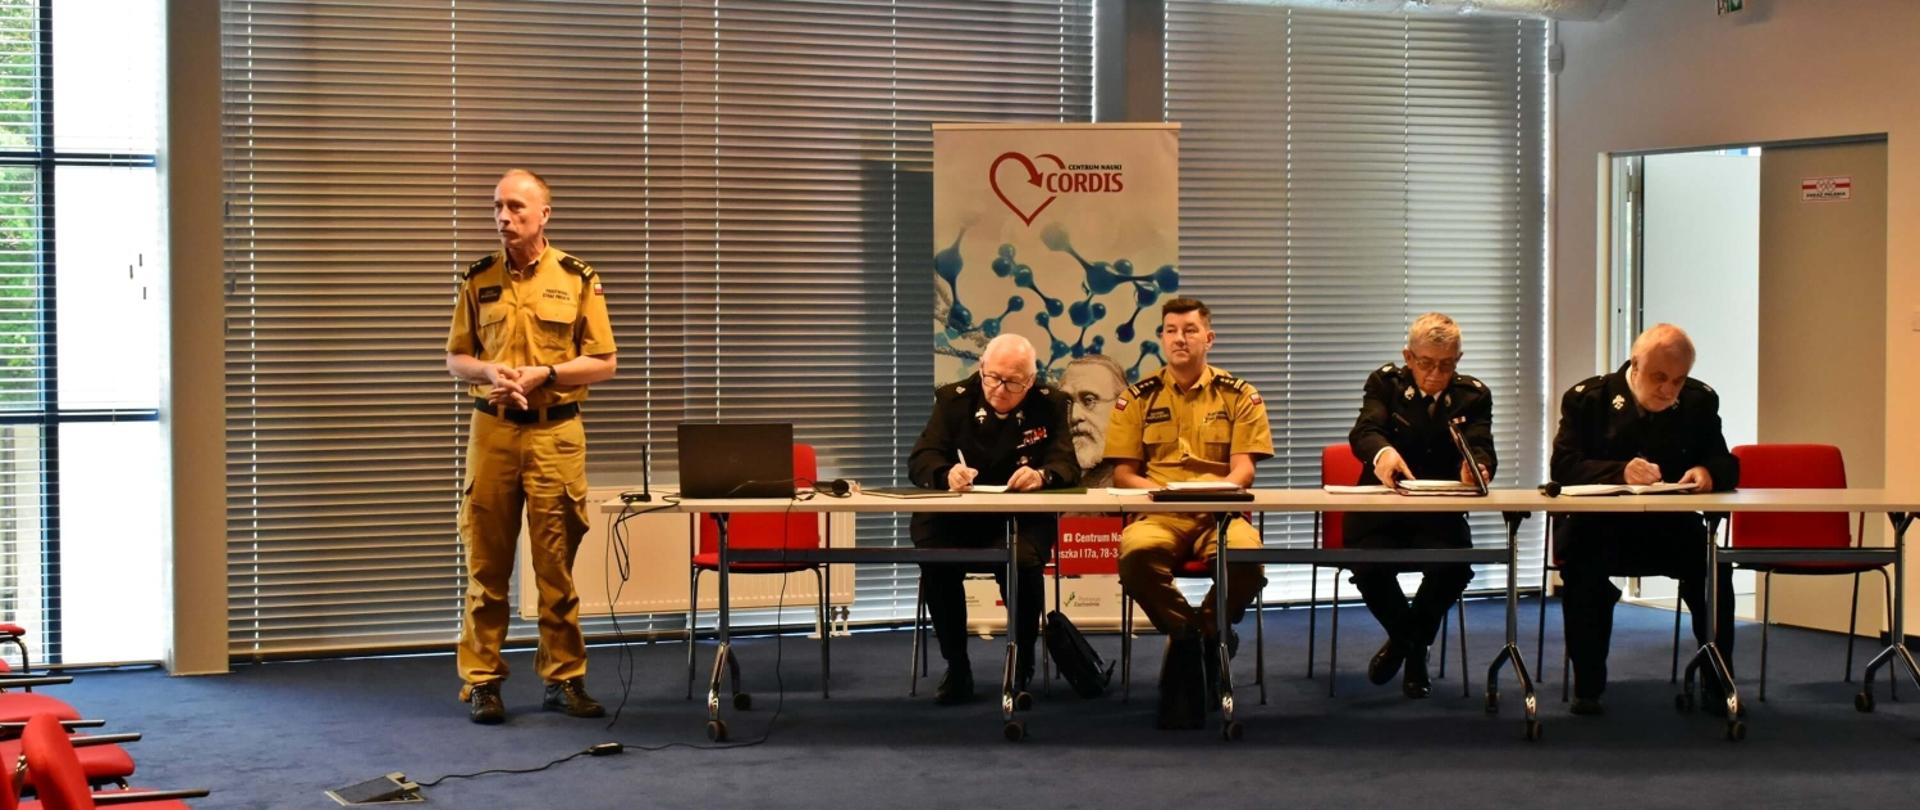 Zdjęcie przedstawia uczestników spotkania z druhów OSP z Zastępcą Zachodniopomorskiego Komendanta Wojewódzkiego PSP w centrum nauki CORDIS. Jedna osoba stoi i wygłasza przemówienie.